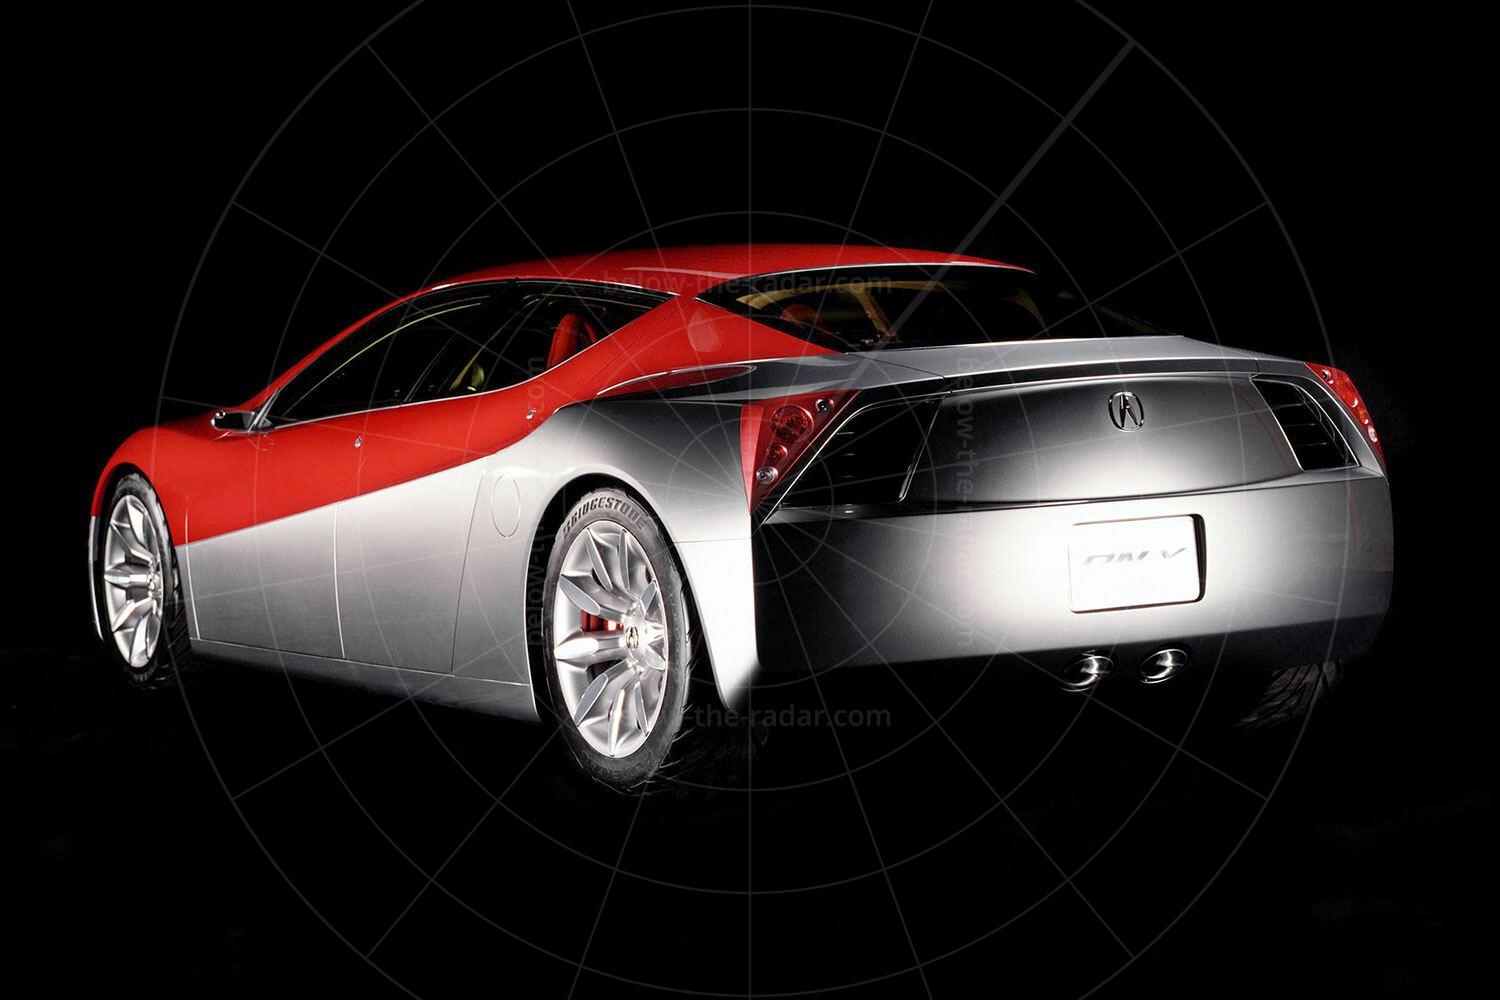 Acura DN-X concept Pic: Acura | 